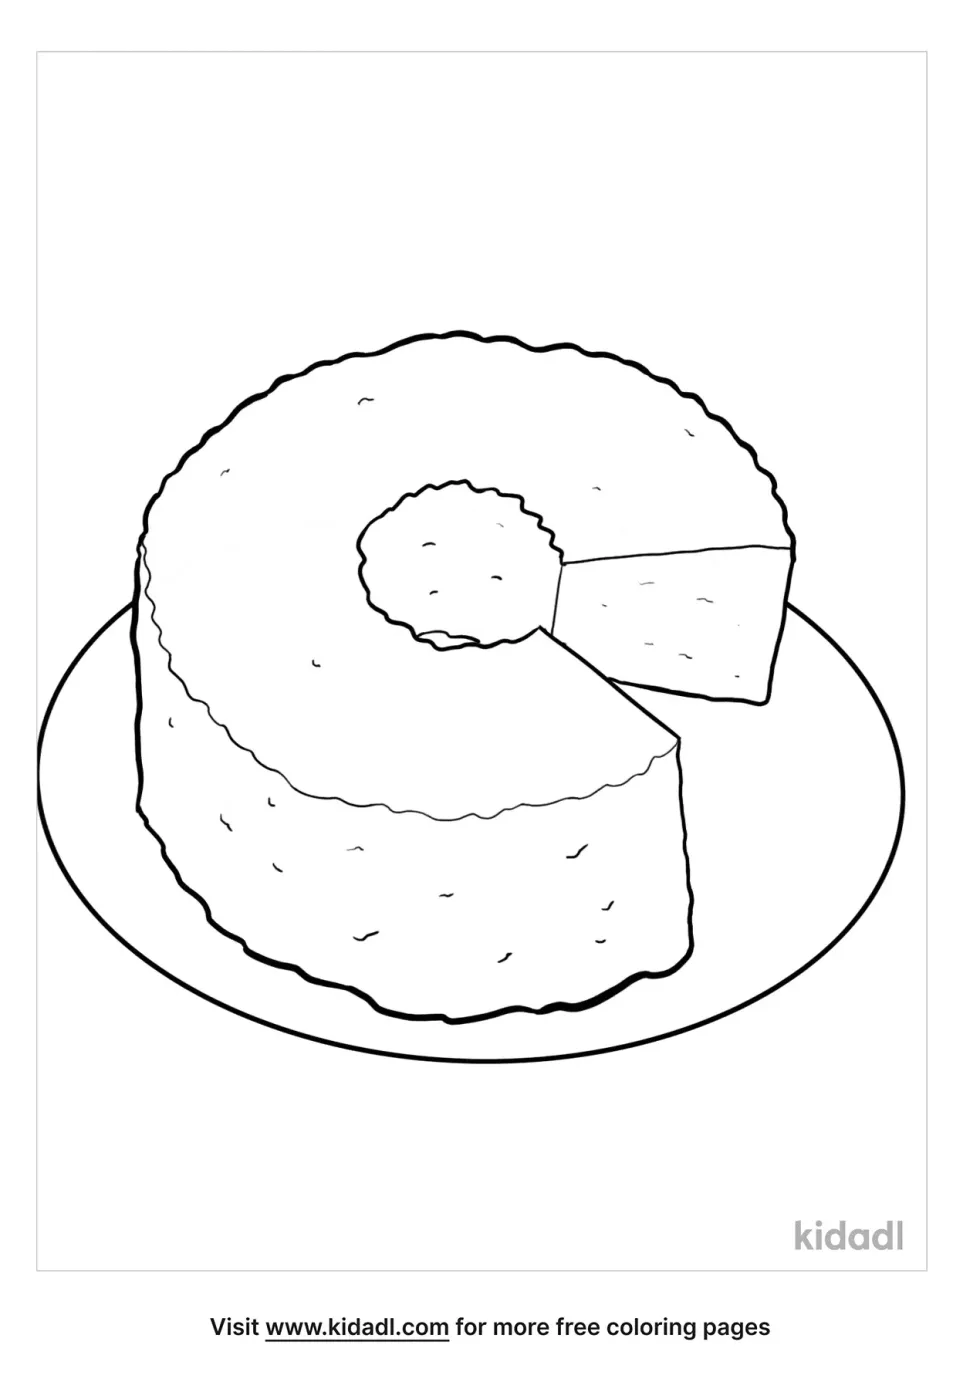 Chiffon Cake Coloring Page